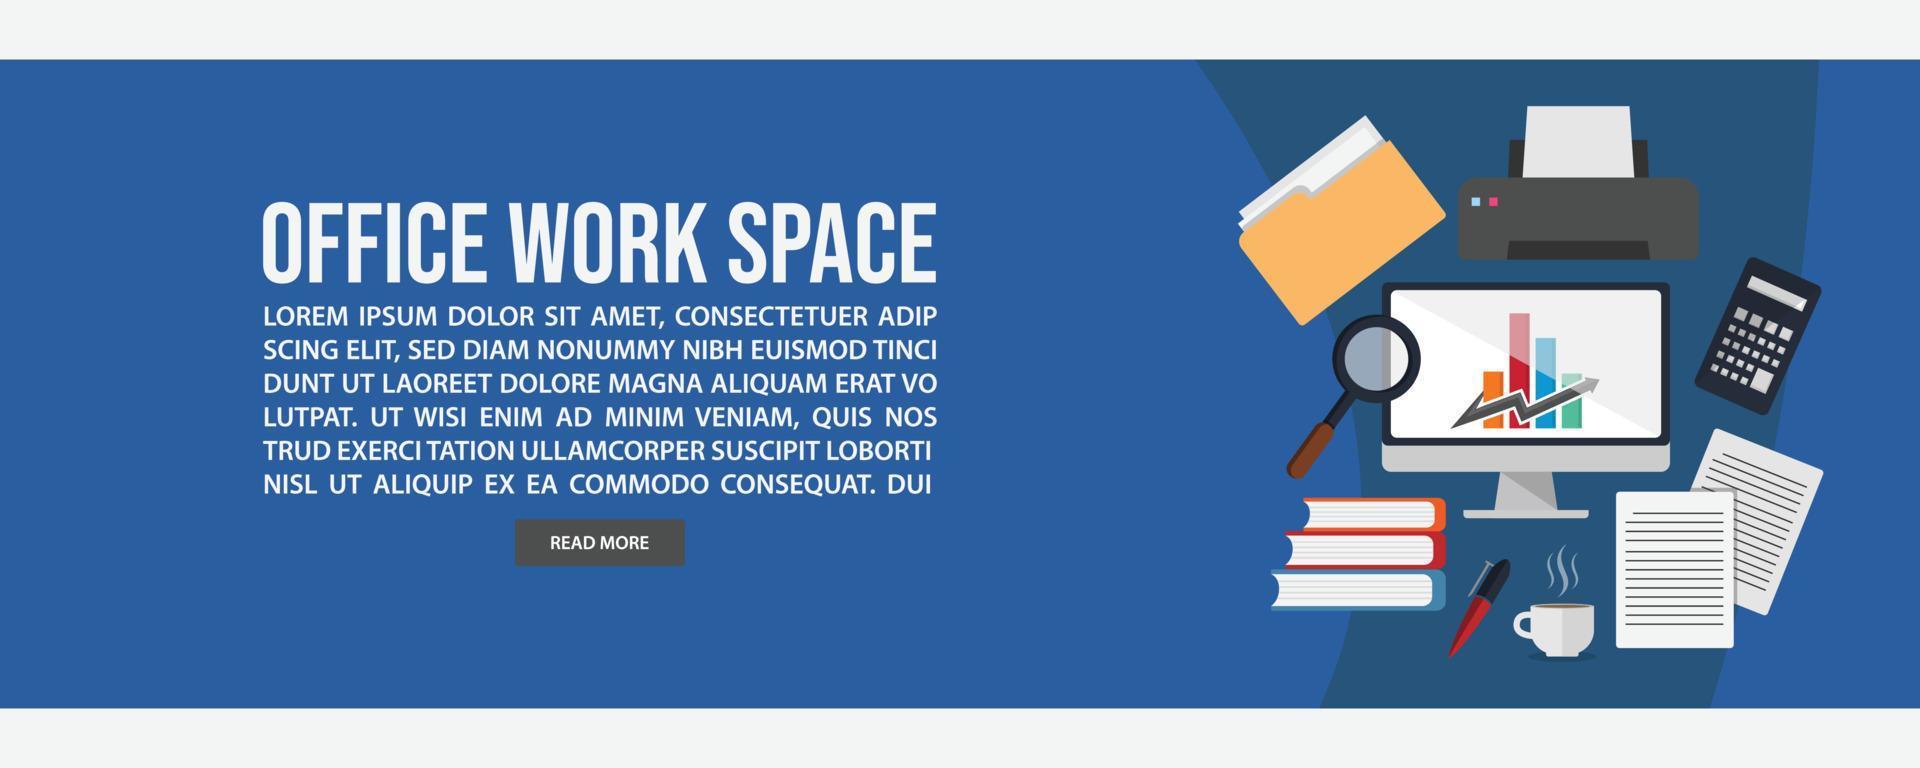 design de modelo de banner da web de espaço de trabalho vetor